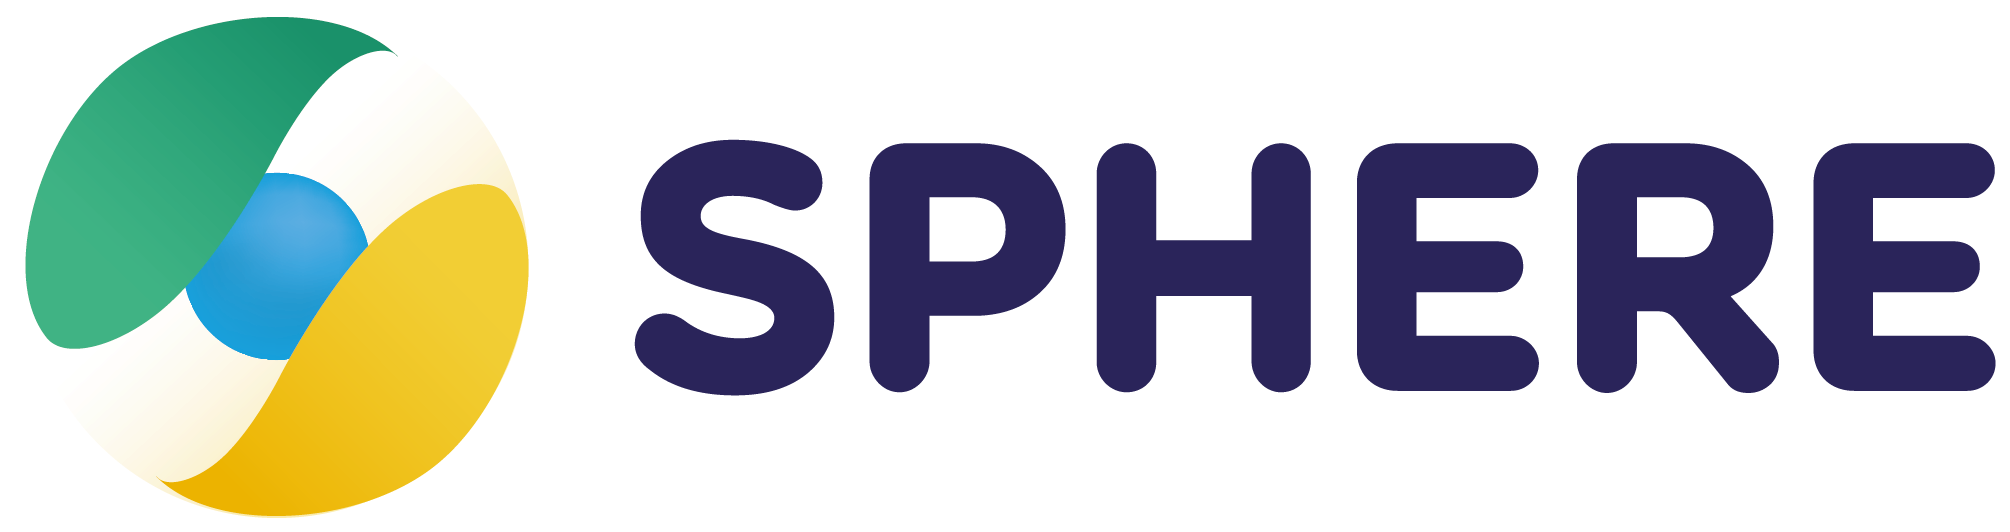 Logo SPHERE